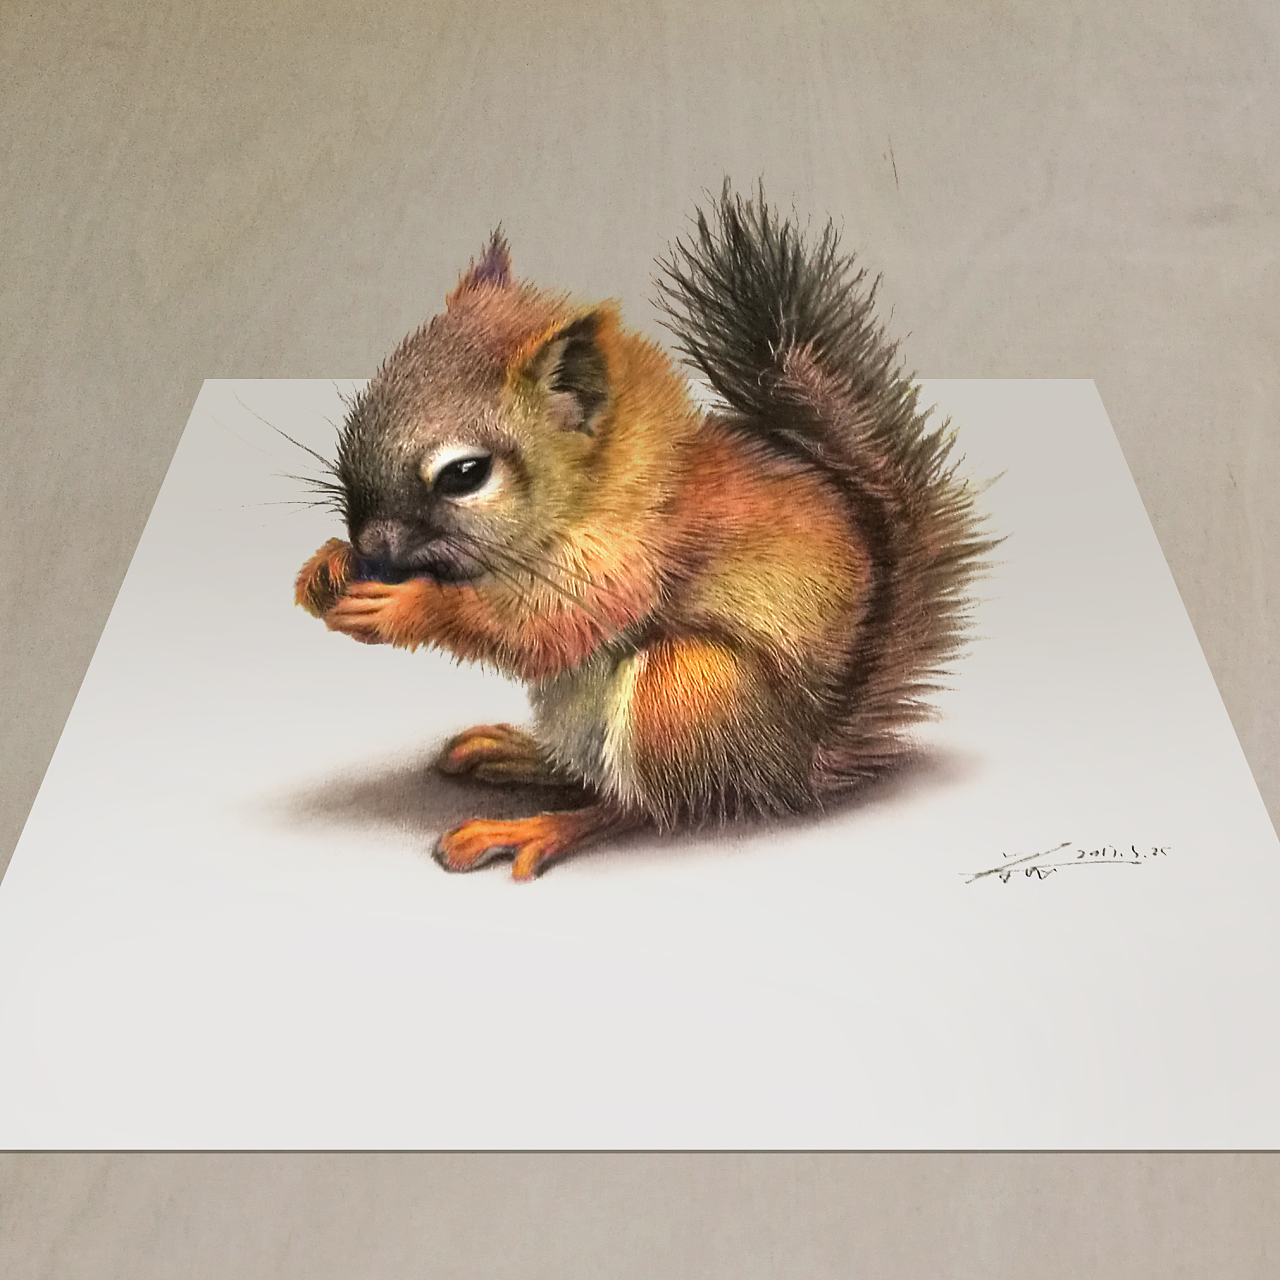 【彩铅立绘】一只小松鼠